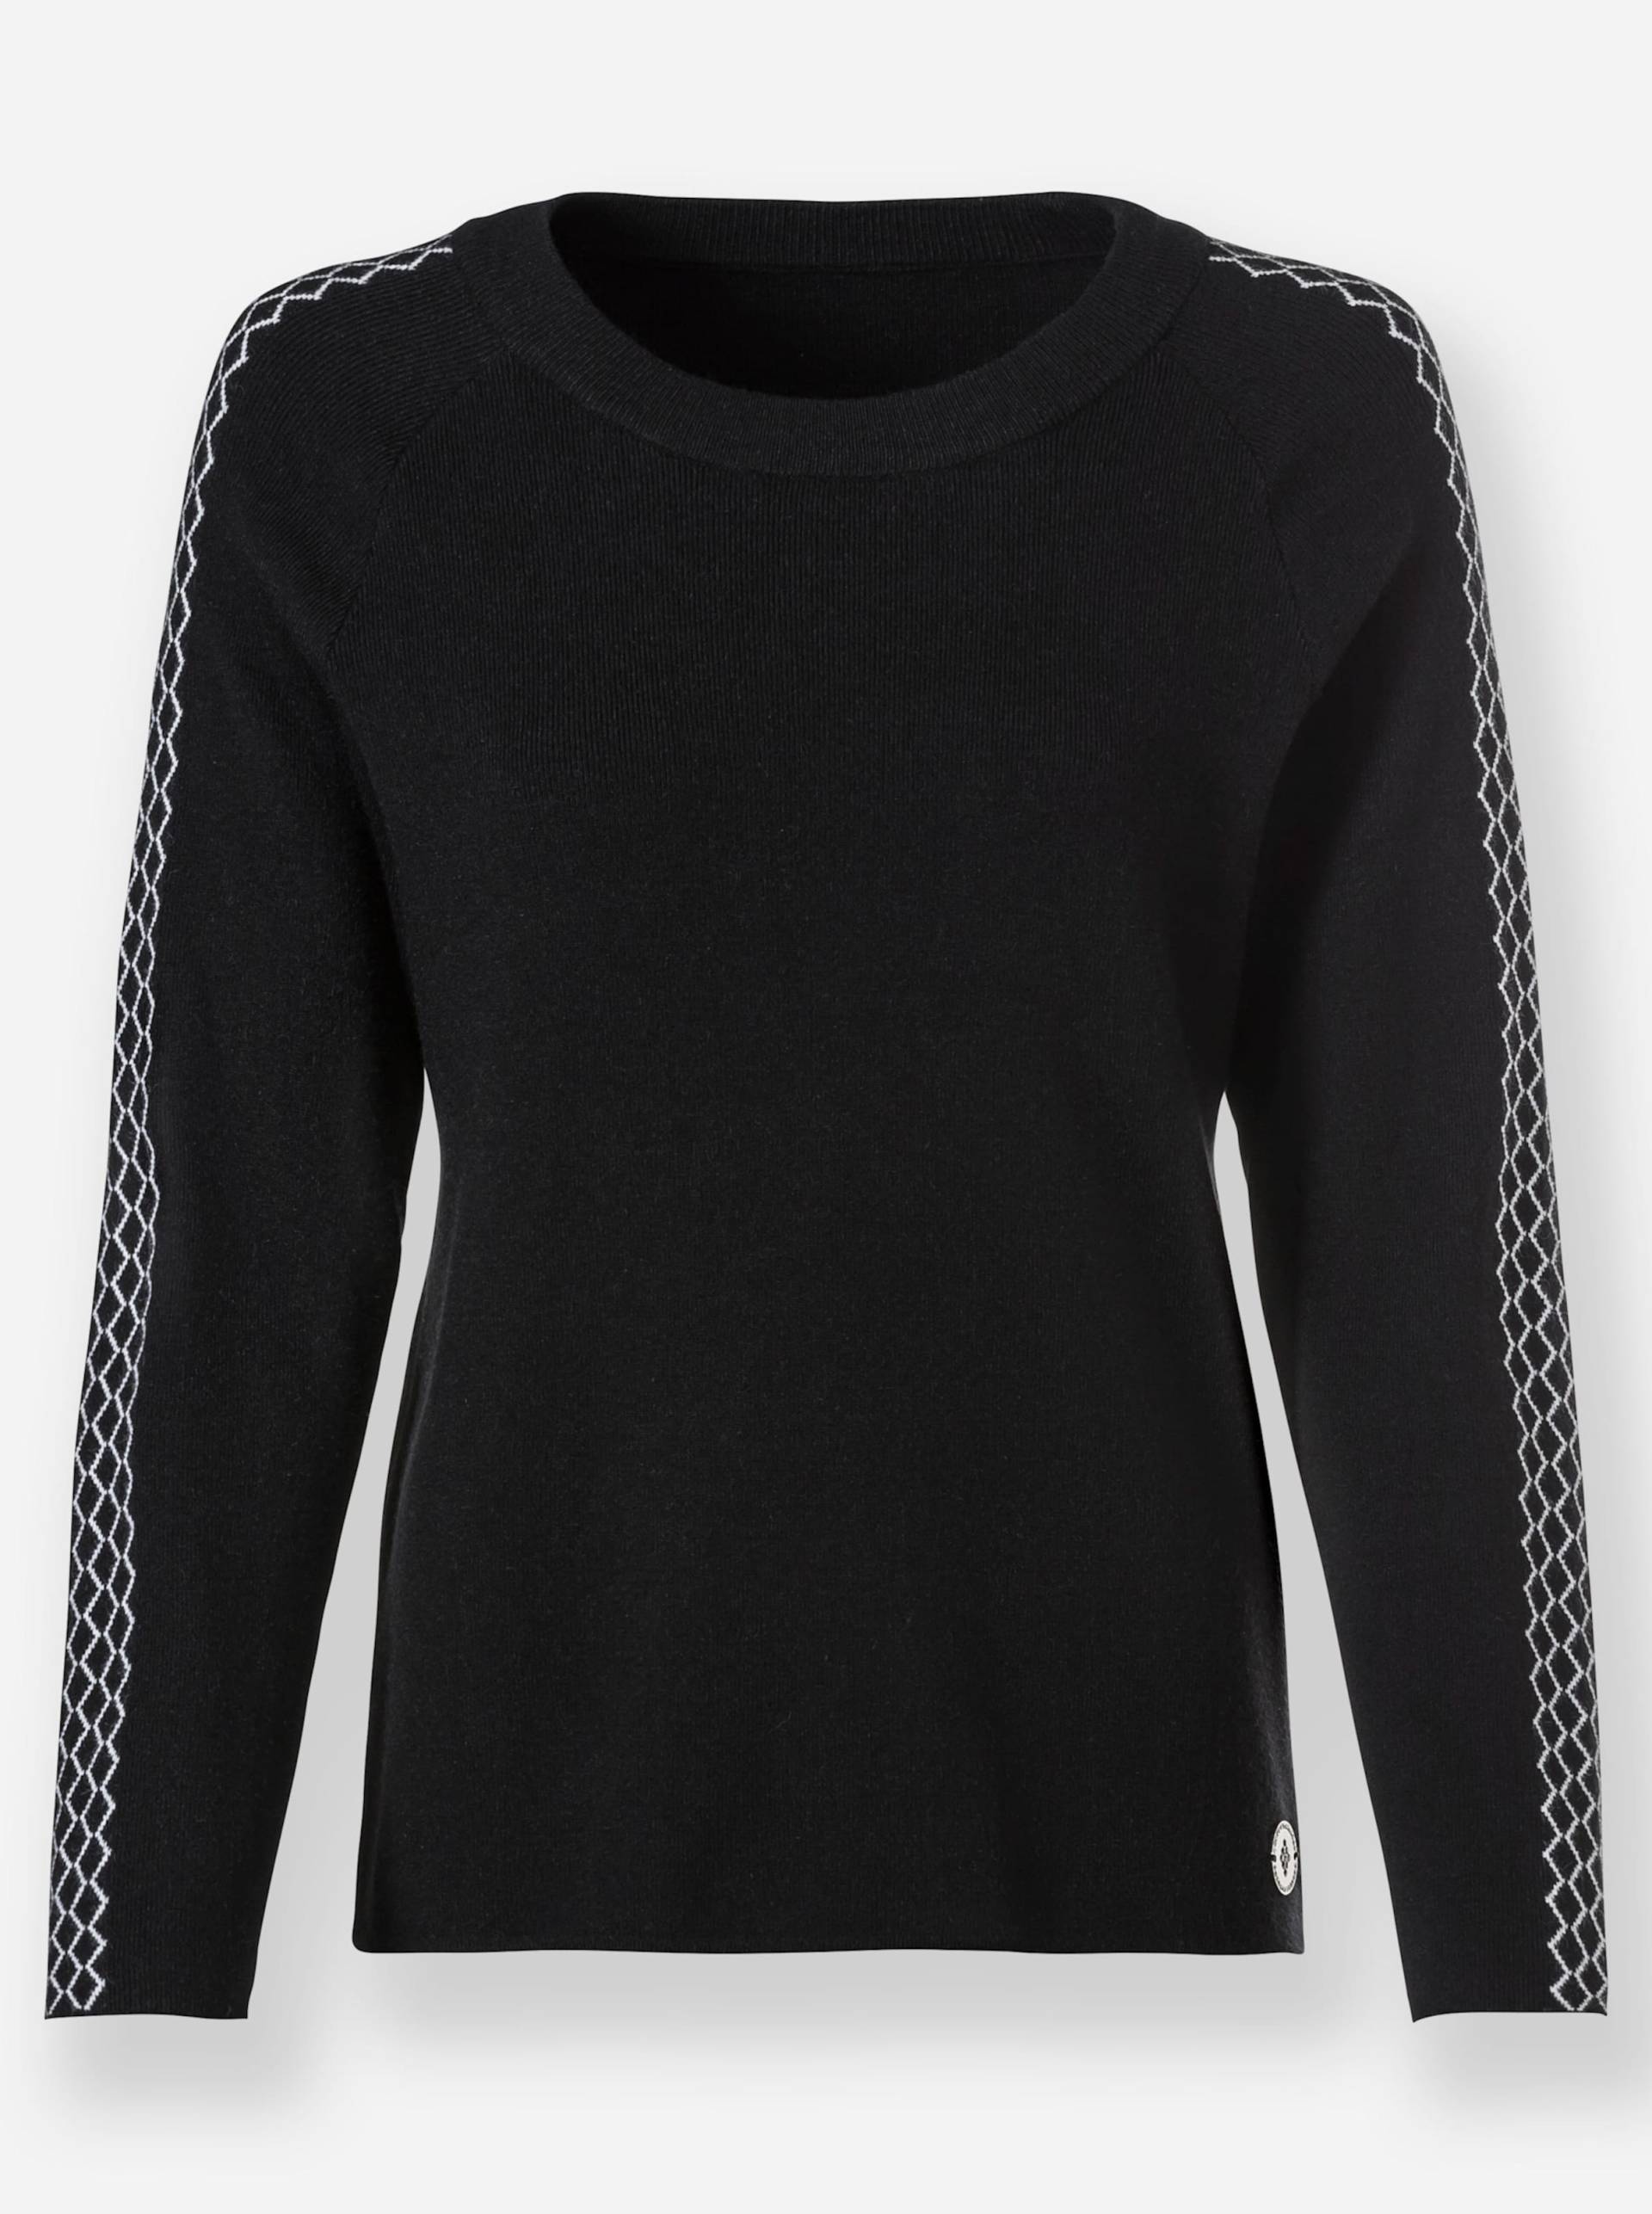 Pullover in schwarz-weiss-gemustert von heine